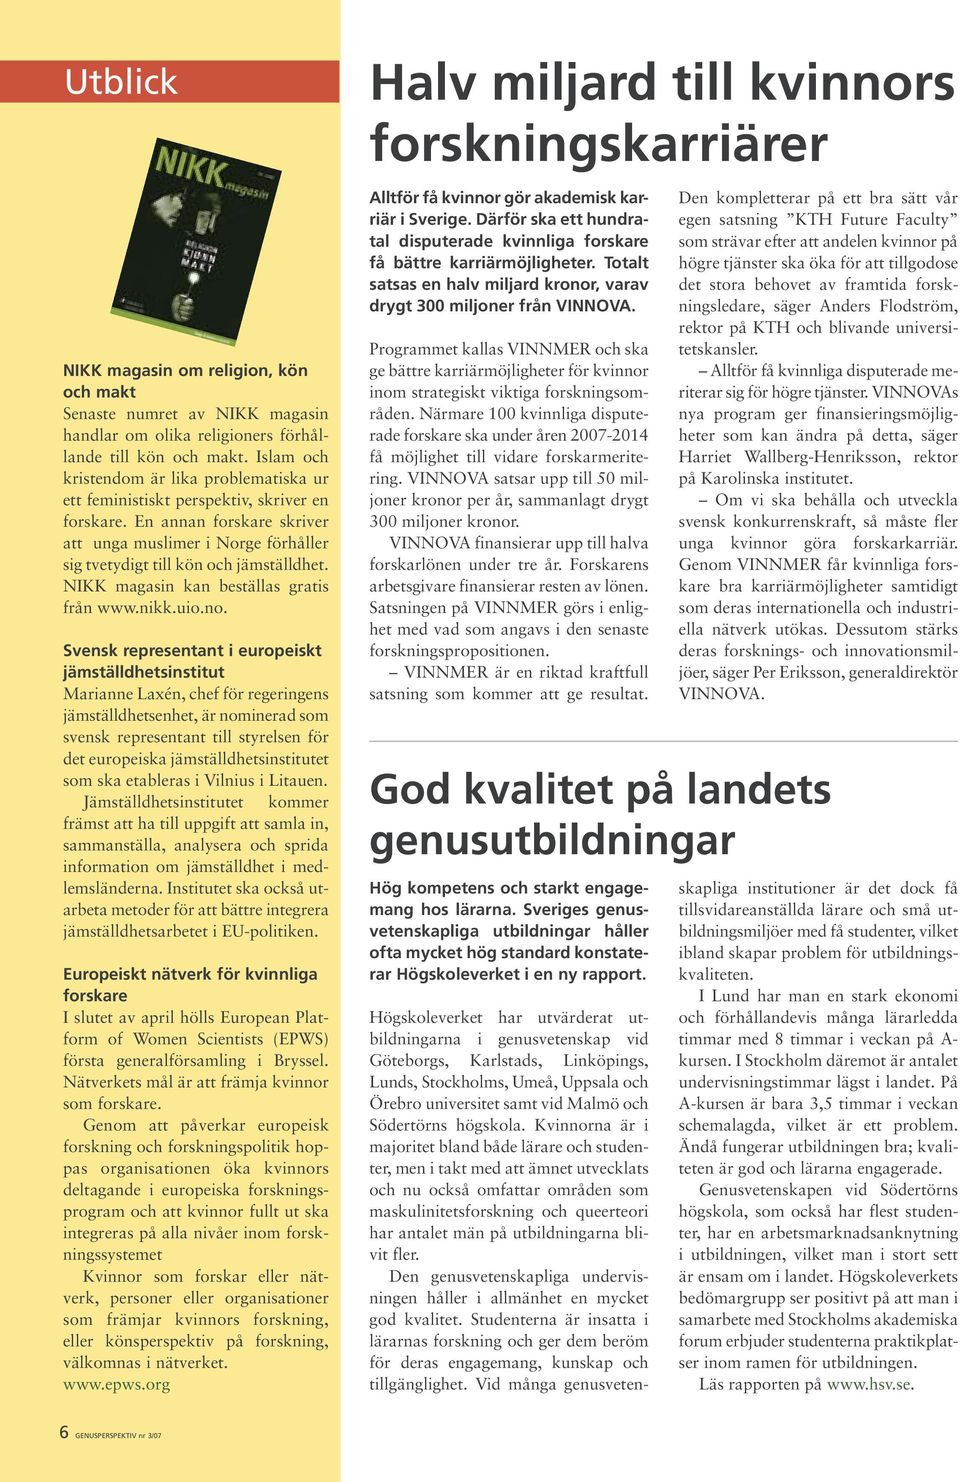 NIKK magasin kan beställas gratis från www.nikk.uio.no.